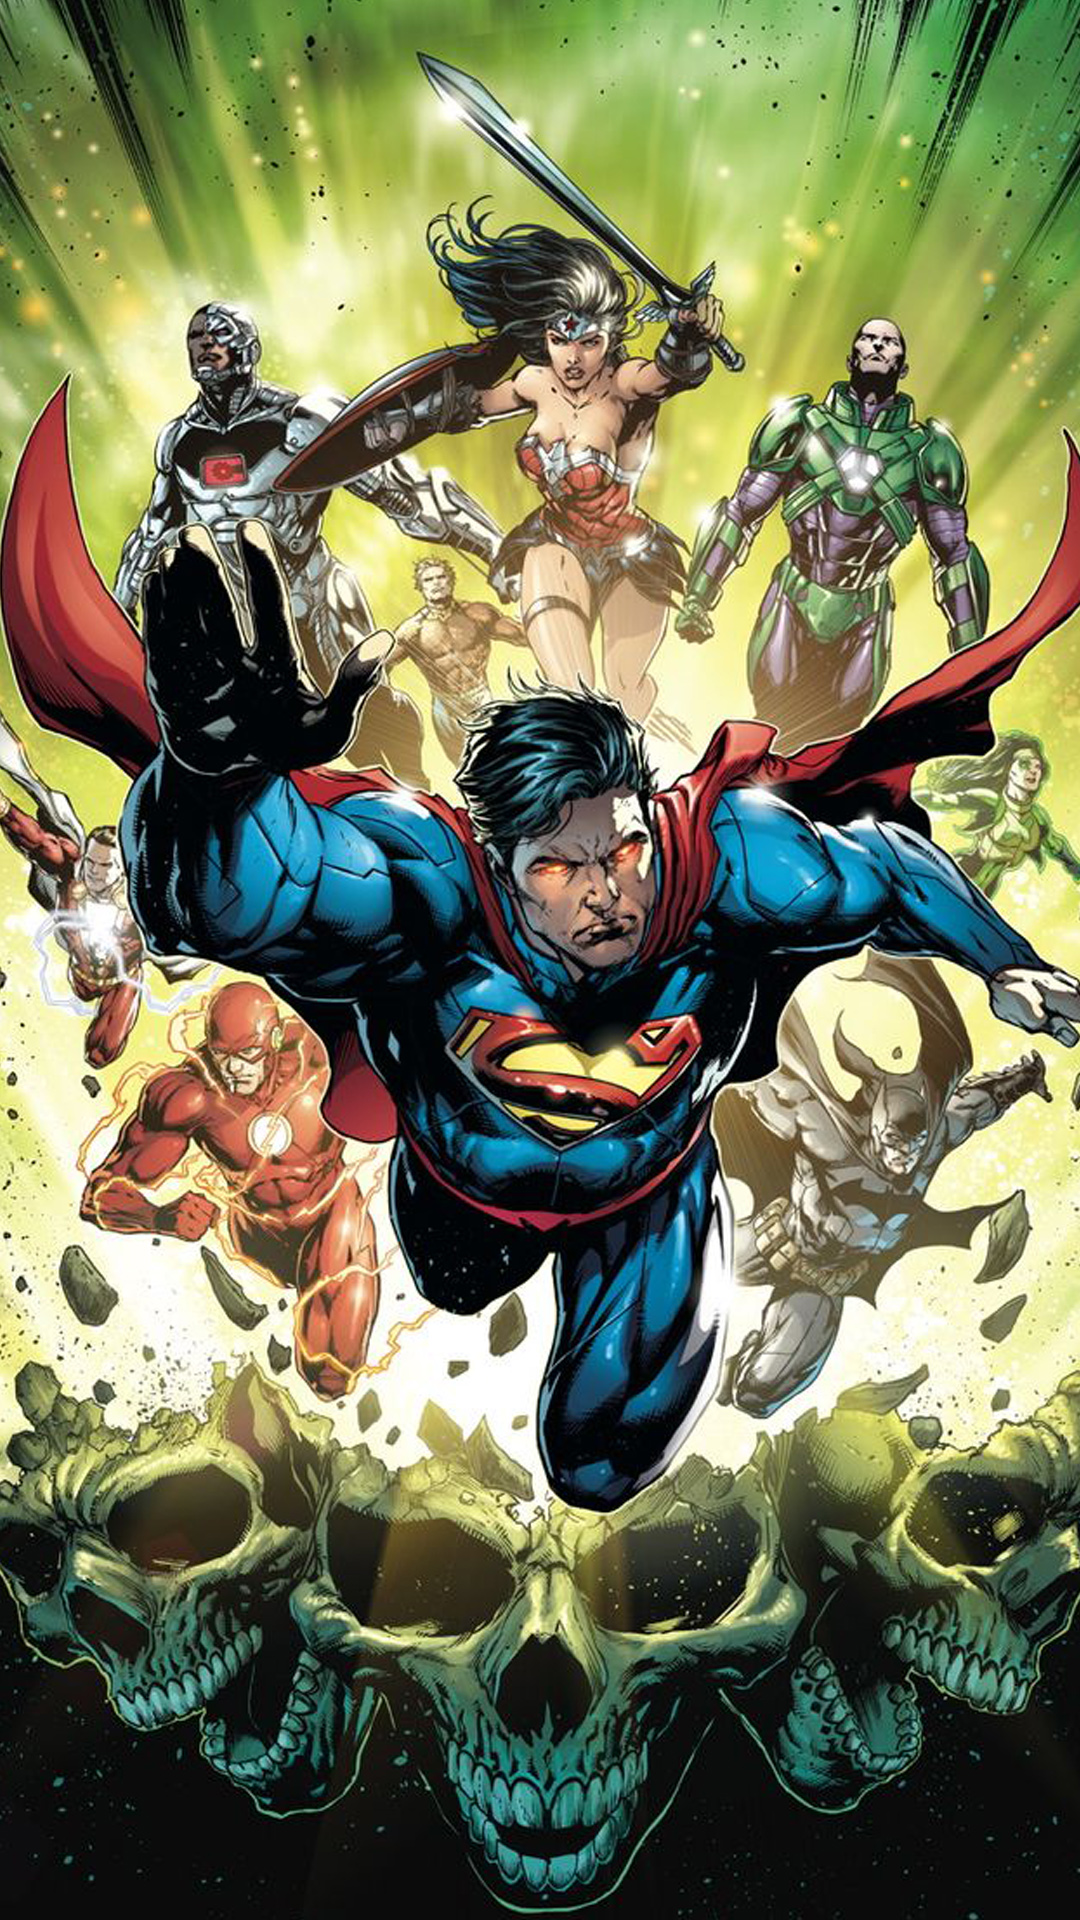 fond d'écran de justice league iphone,super héros,personnage fictif,des bandes dessinées,héros,fiction